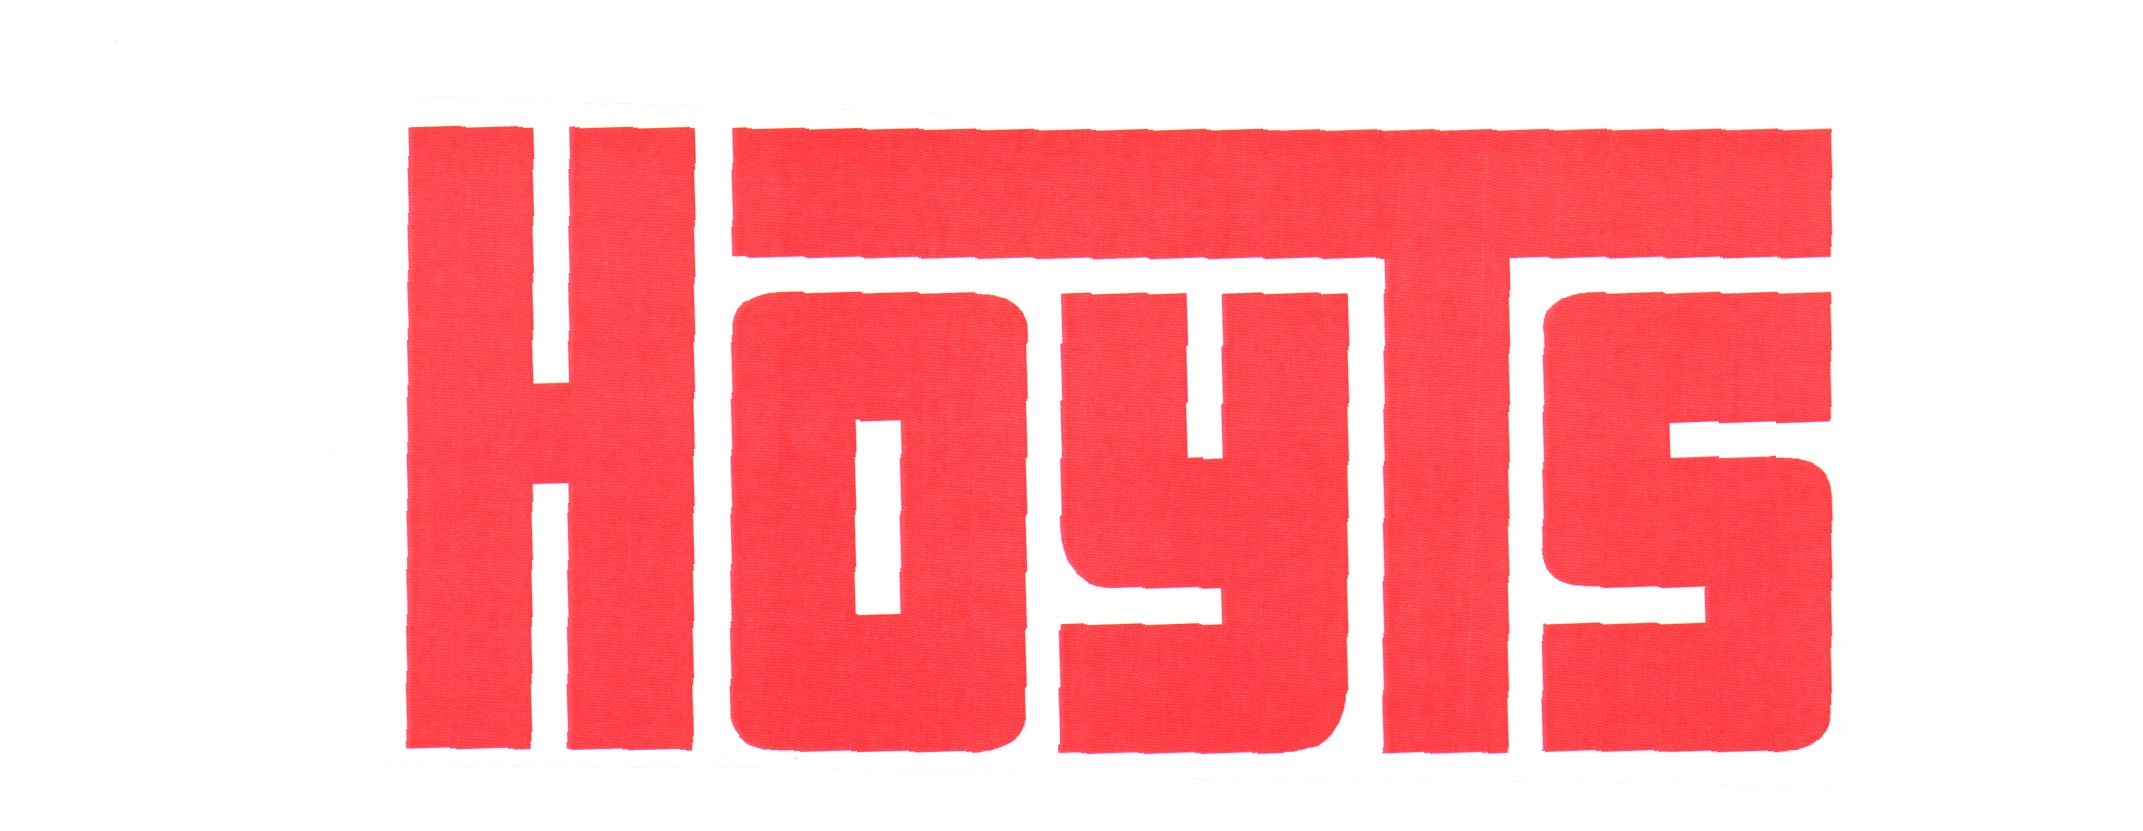 Hoyts Cinemas Logo